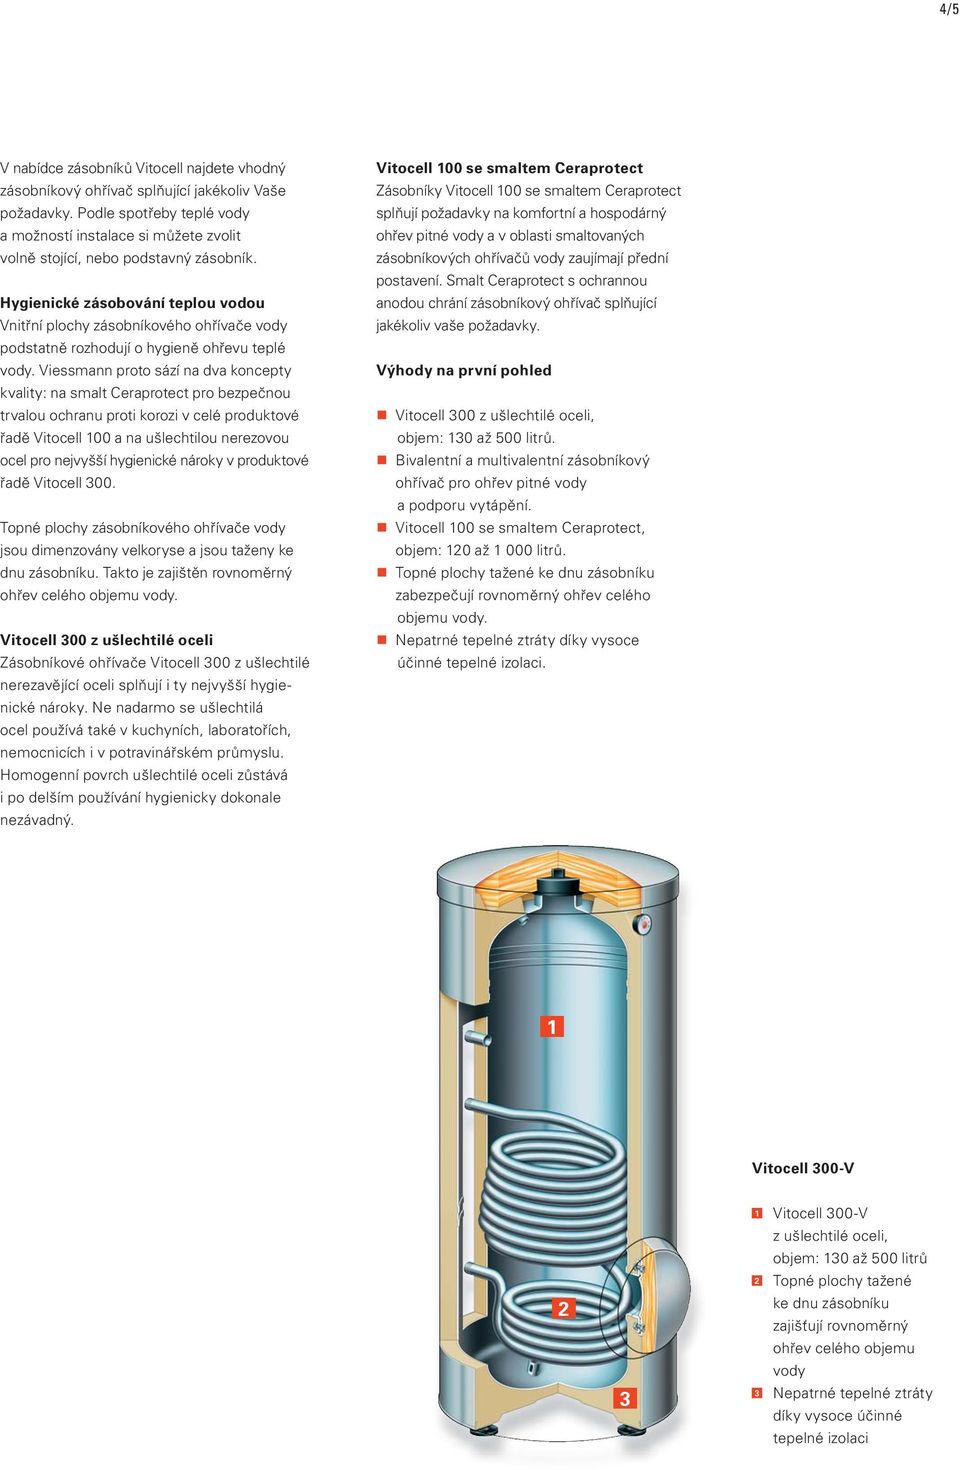 Hygienické zásobování teplou vodou Vnitřní plochy zásobníkového ohřívače vody podstatně rozhodují o hygieně ohřevu teplé vody.